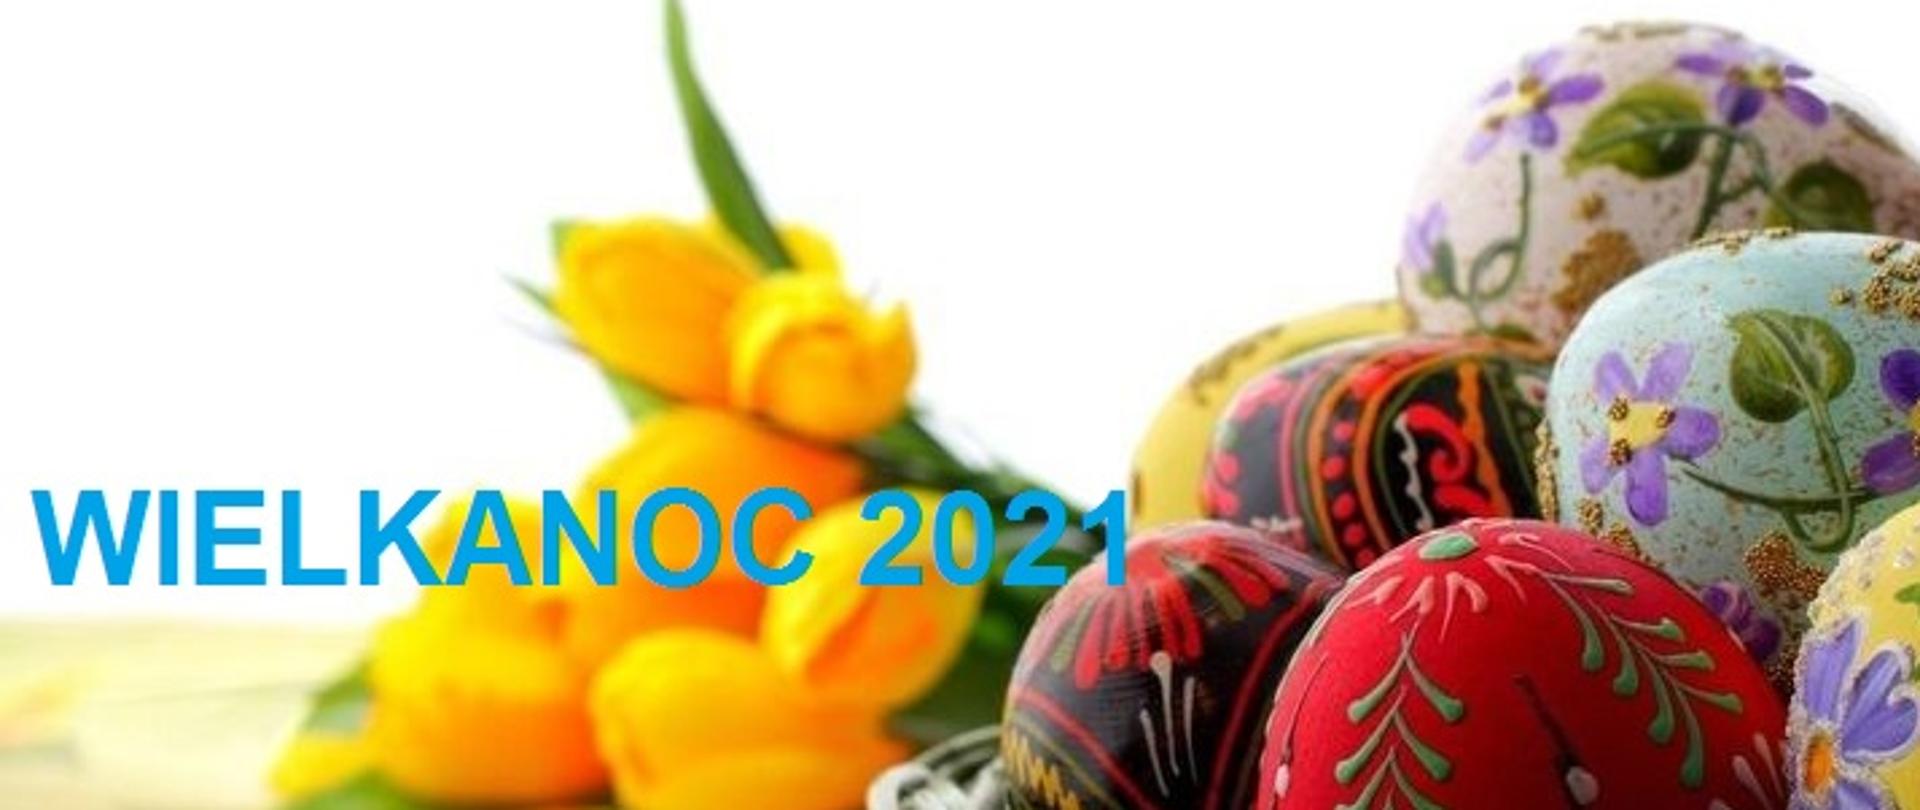 Kolorowa fotografia przedstawia kilka malowanych, wielokolorowych jajek w koszyku, na tle bukietu żółtych tulipanów z niebieskim napisem obok Wielkanoc 2021.